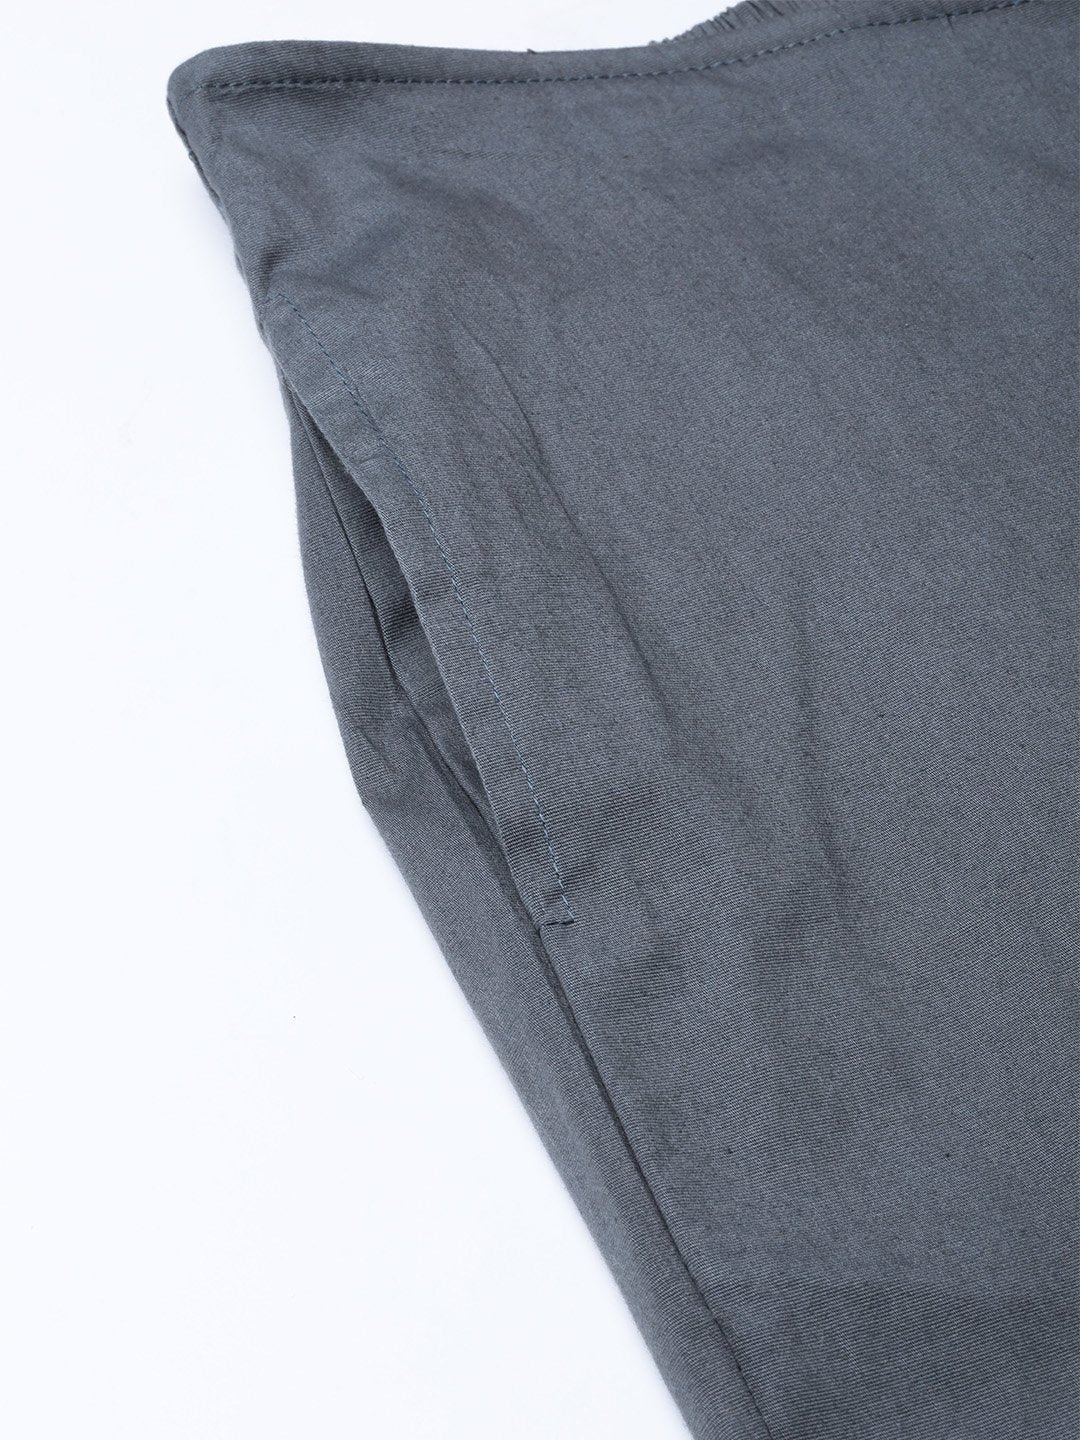 Jompers Women Grey Smart Fit Solid Bottom Flared Trousers ( JOP 2128 Grey )